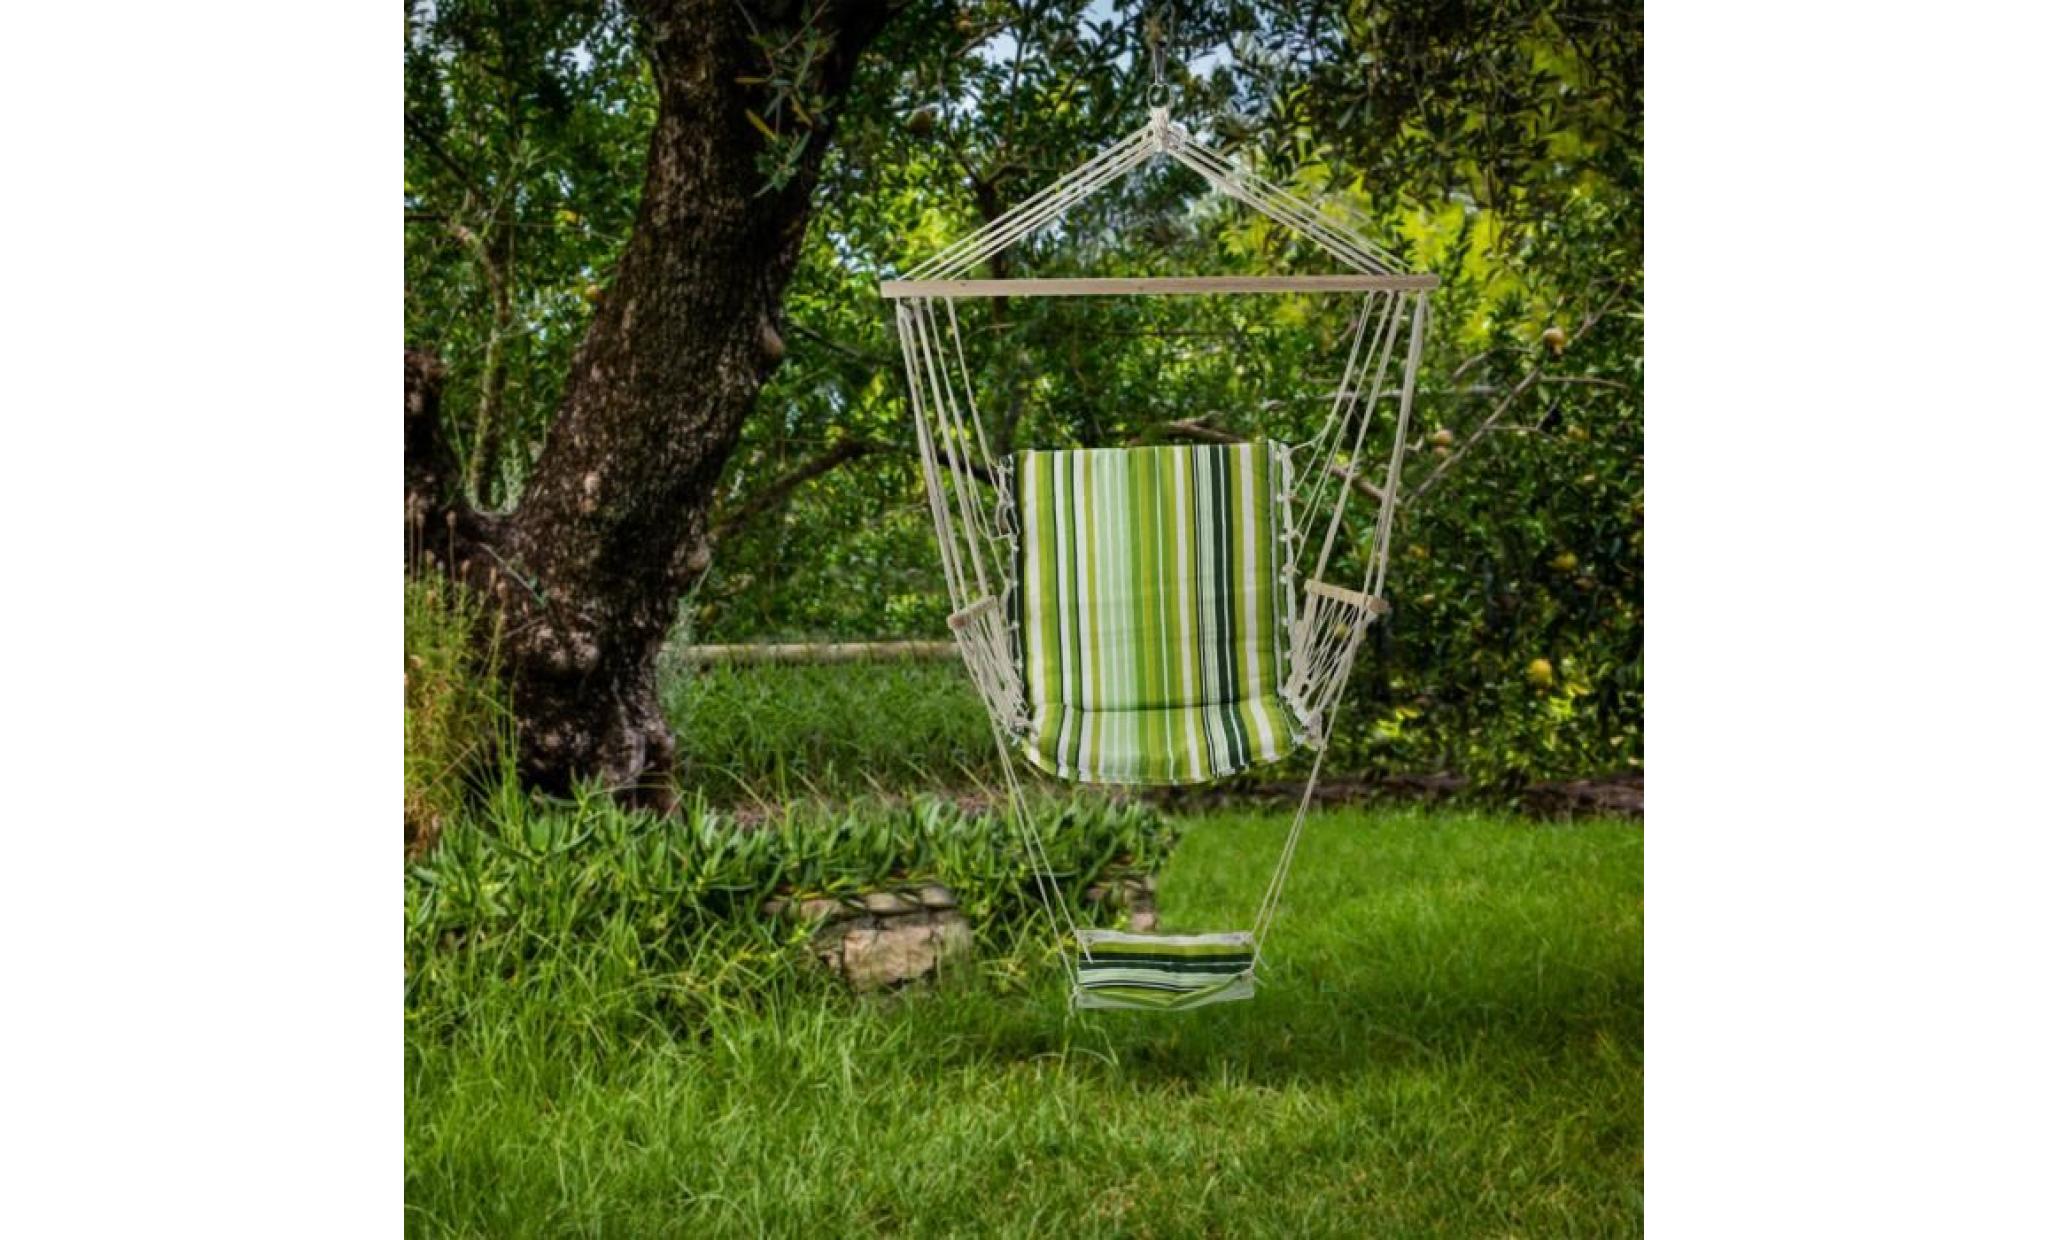 costway chaise suspendue chaise fauteuil hamac chaise hamac avec support en coton fauteuil suspendu100 x 58 cm vert